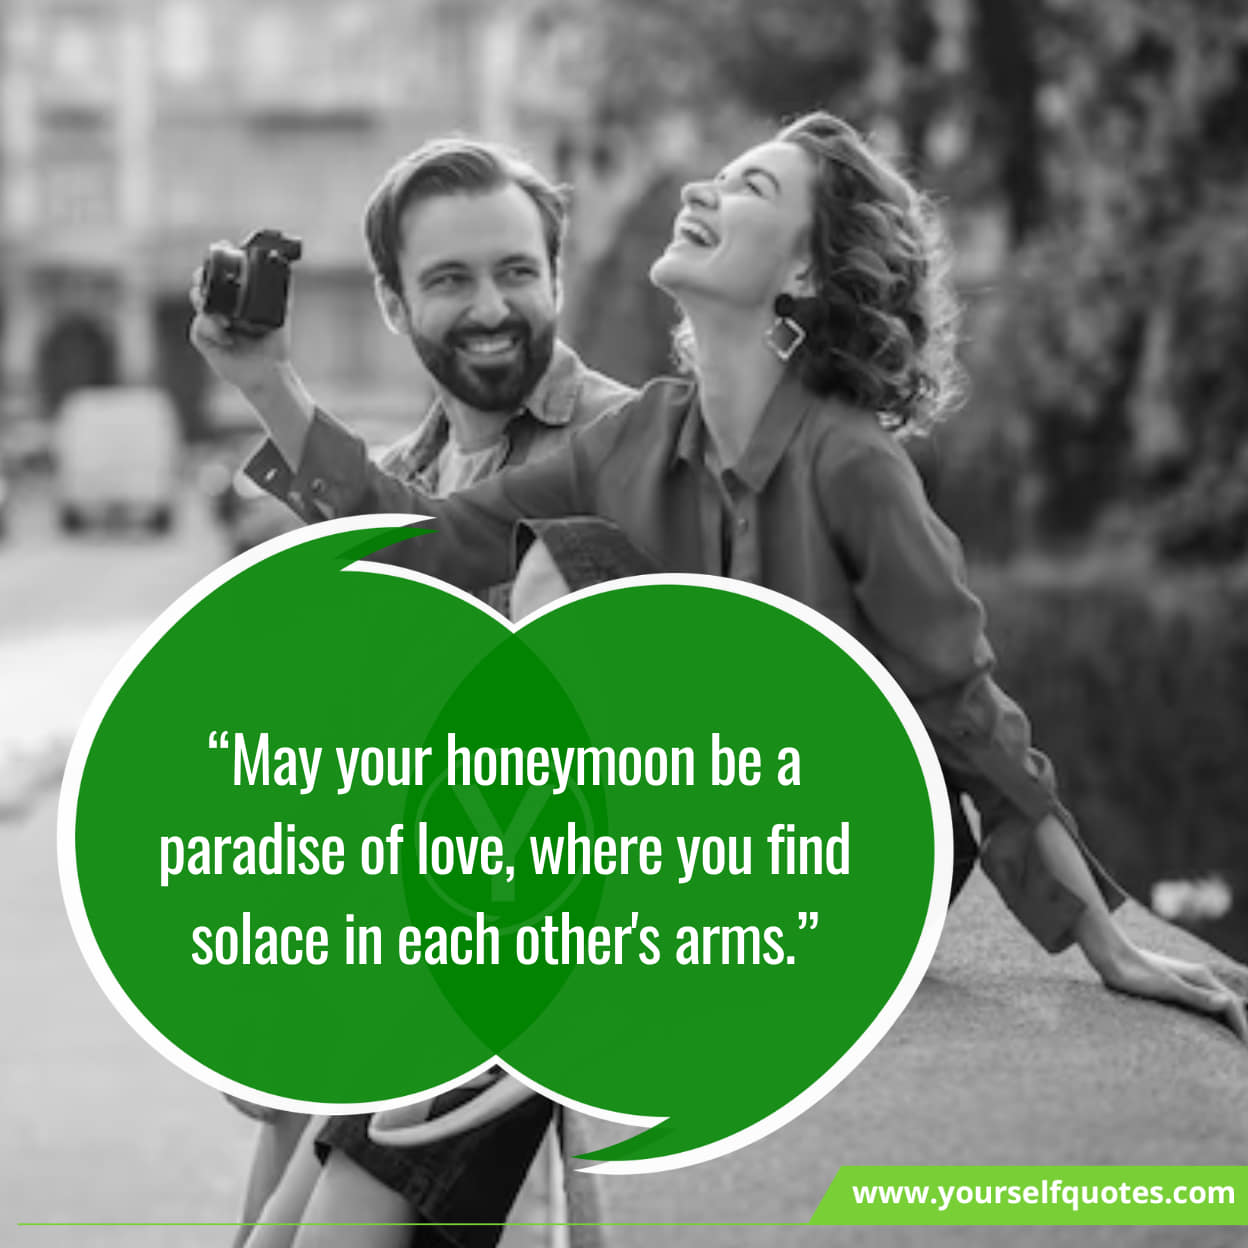 Sending Honeymoon Love and Happiness